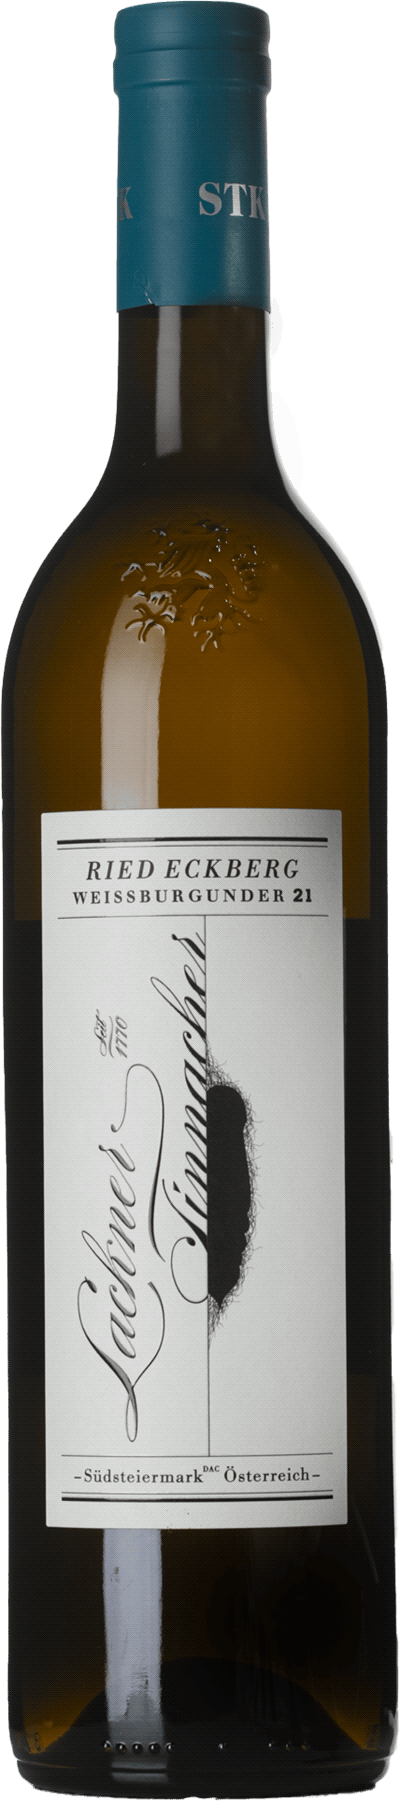 Ried Eckberg Weissburgunder Weingut Lackner-Tinnacher